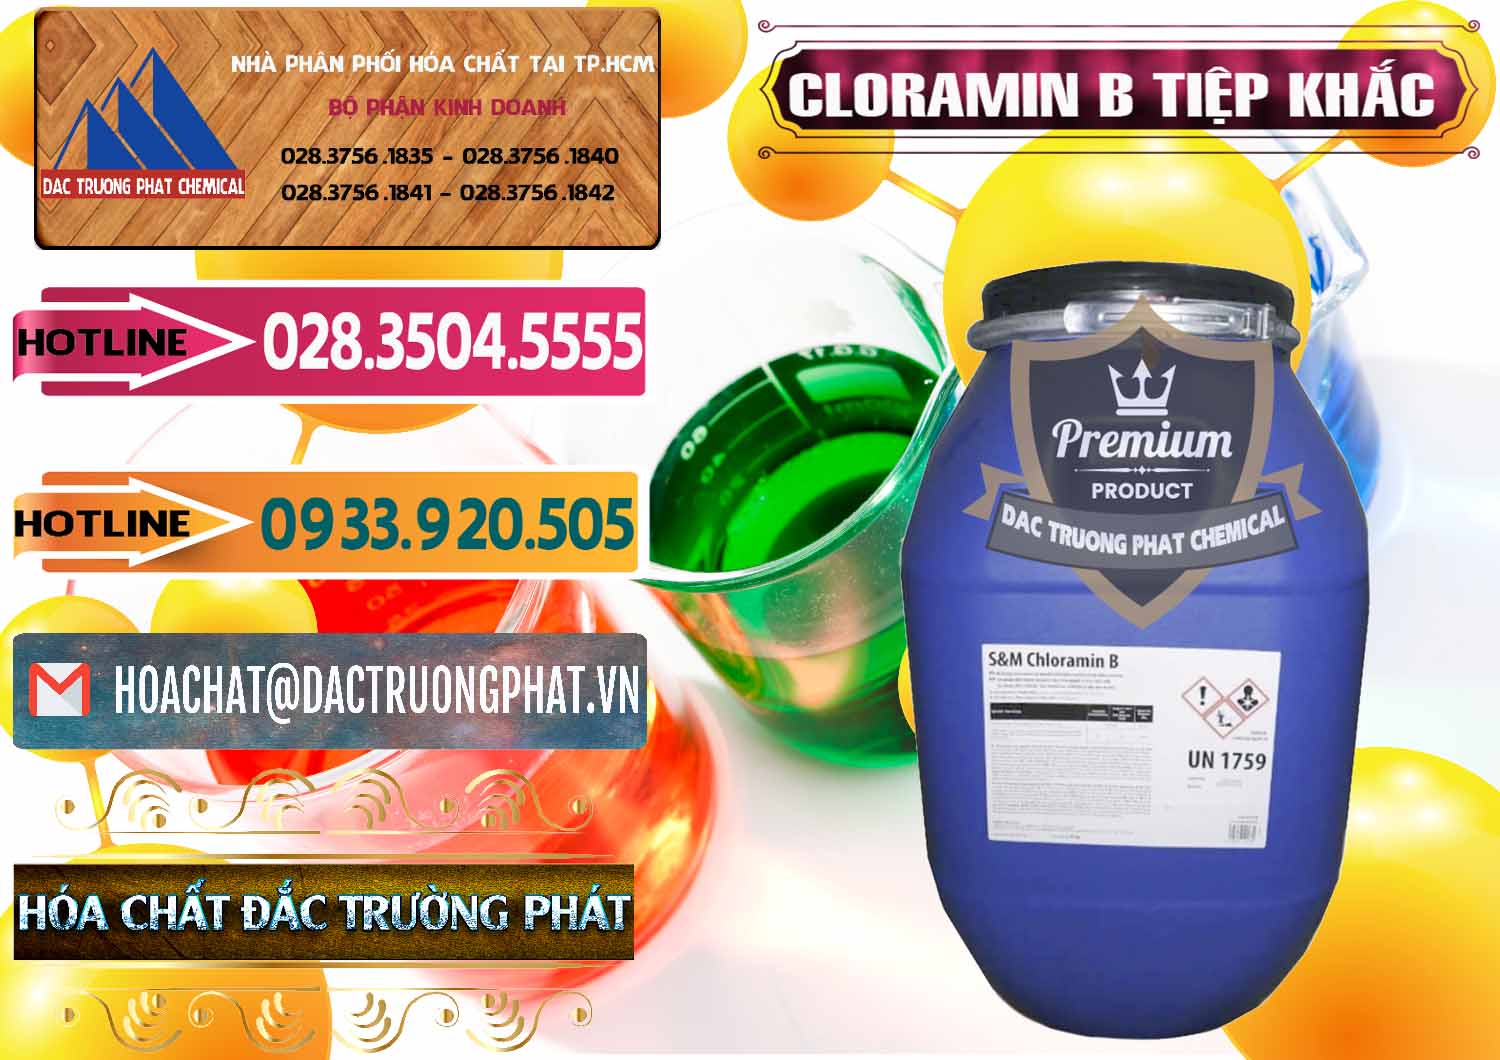 Nhà phân phối - bán Cloramin B Cộng Hòa Séc Tiệp Khắc Czech Republic - 0299 - Cty phân phối & cung ứng hóa chất tại TP.HCM - dactruongphat.vn